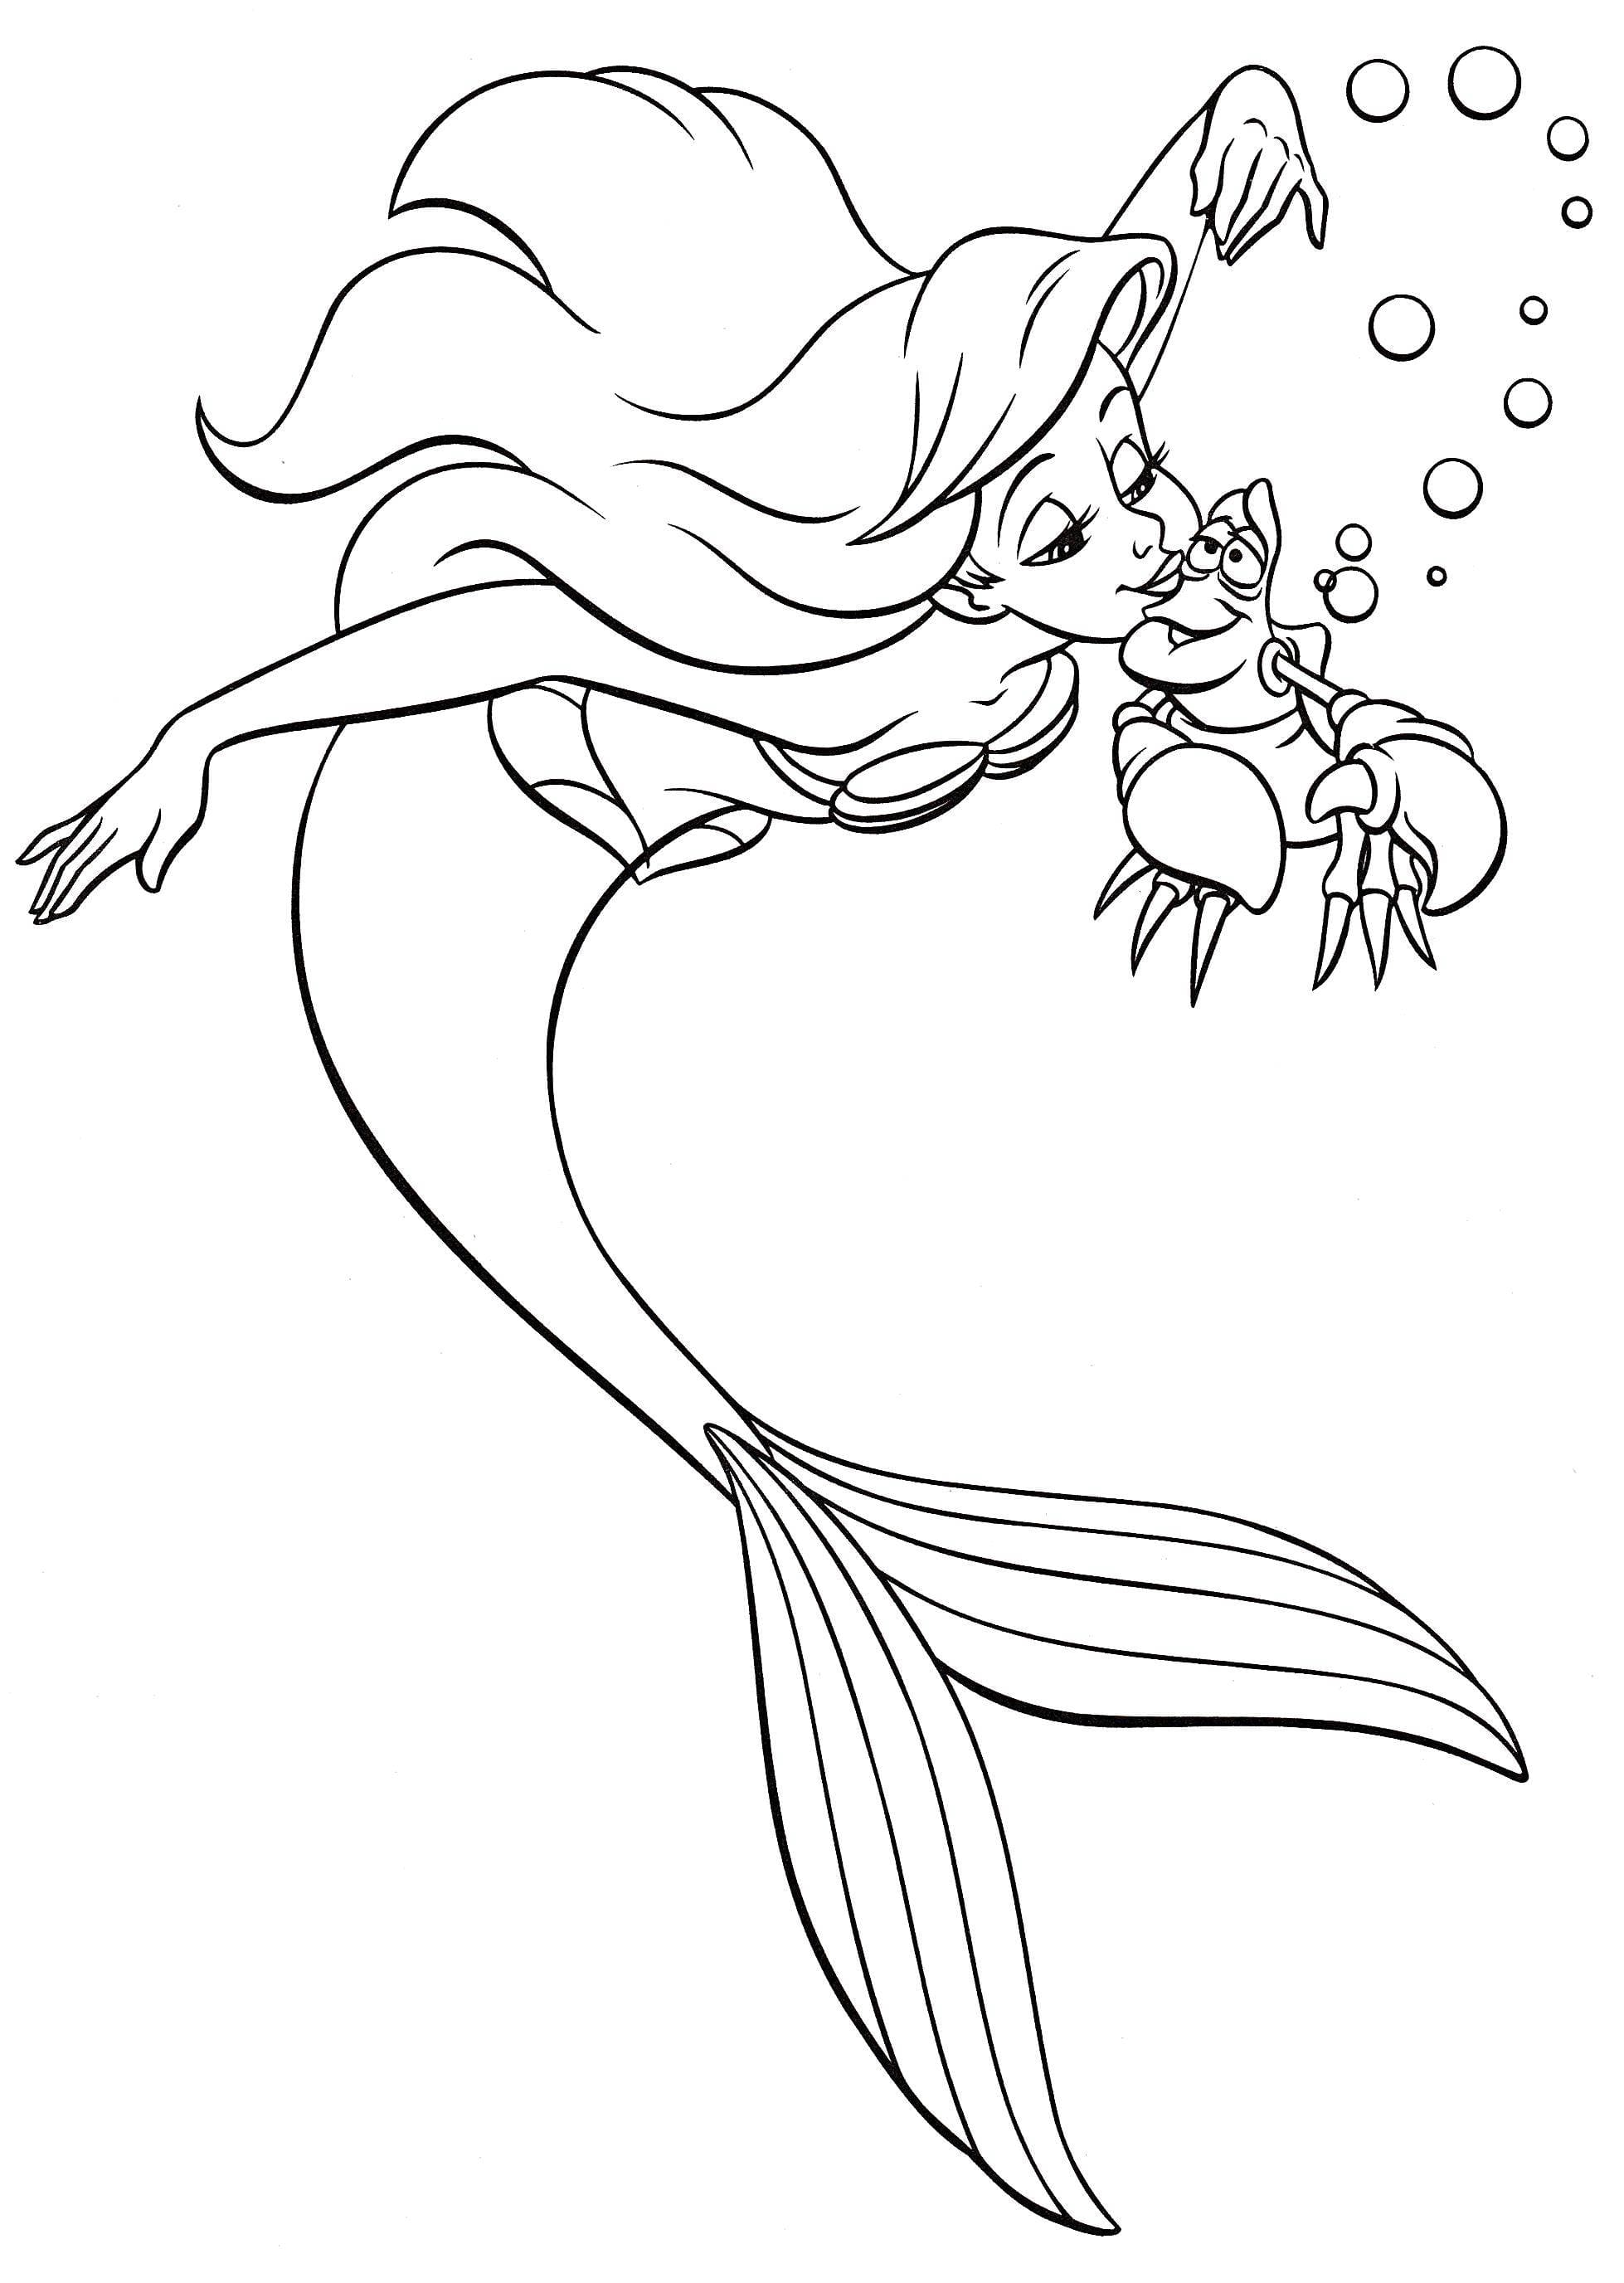 Dibujo de Ariel 50 de La sirenita para imprimir y colorear